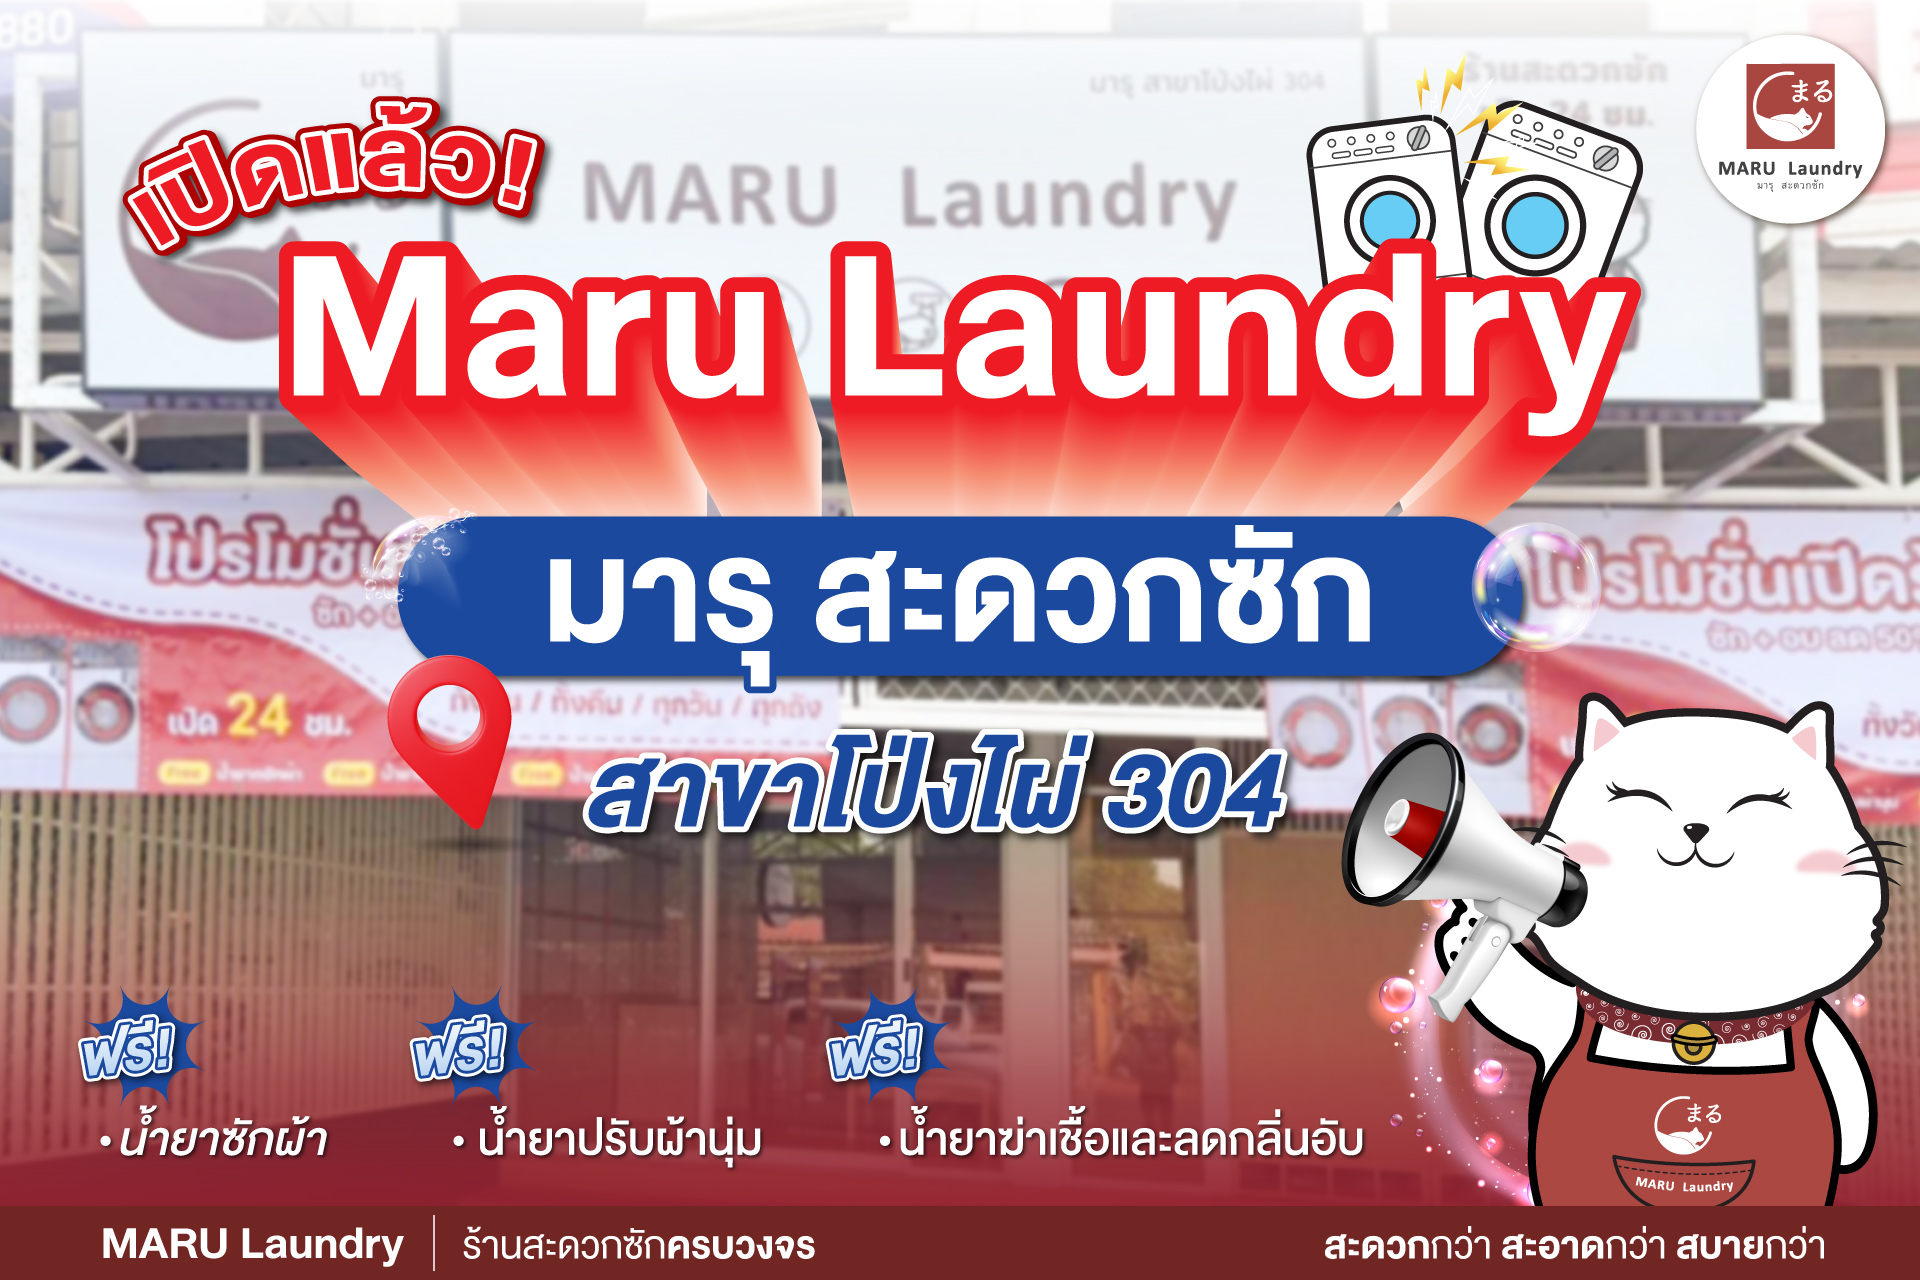 บริการซักอบที่ครบครันที่ Maru Laundry สาขาโป่งไผ่ 304